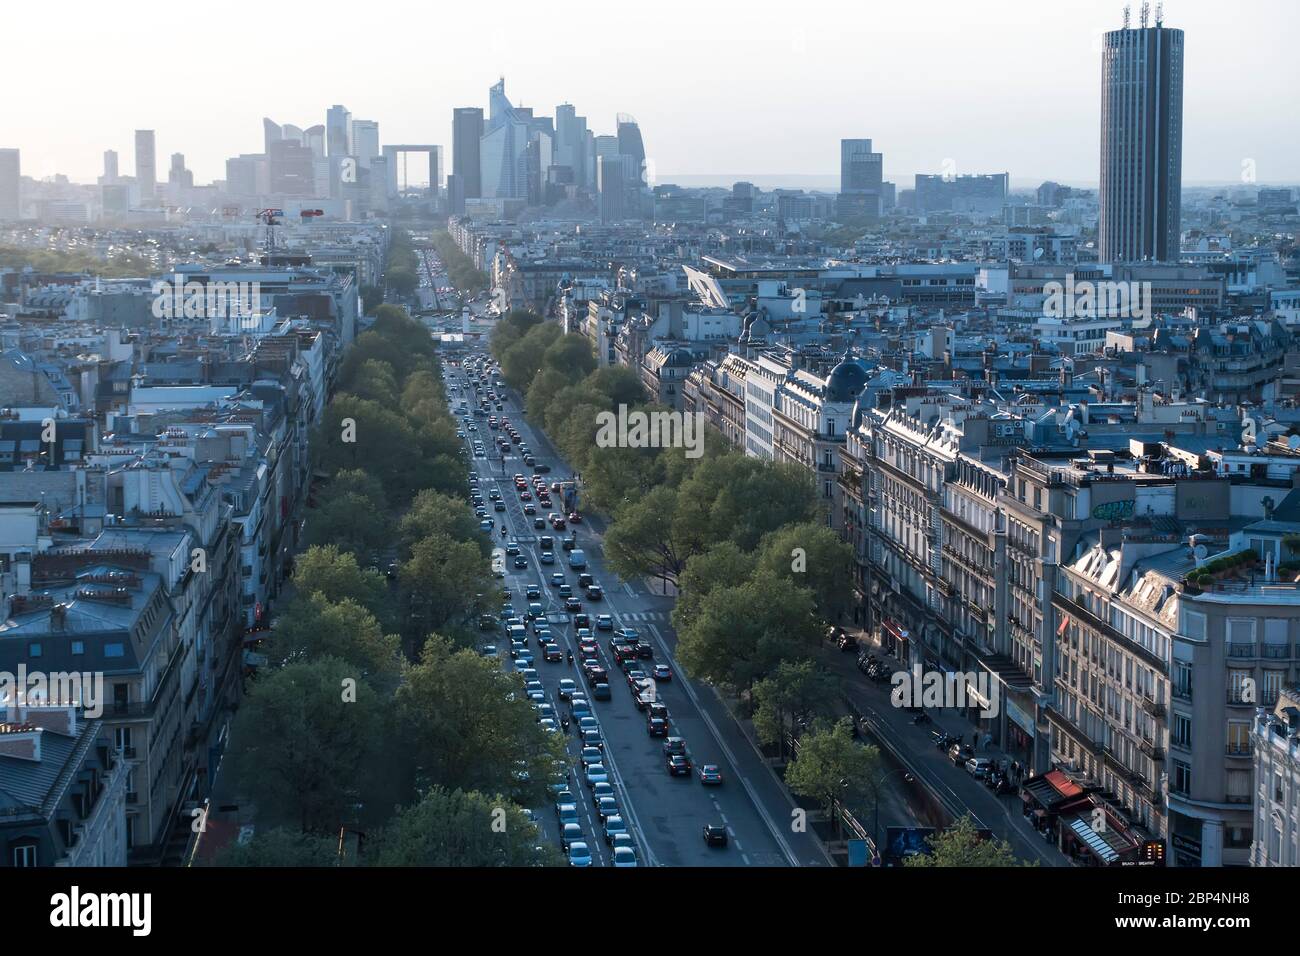 Charles de Gaulle Avenue and La Défense, Paris, France Stock Photo